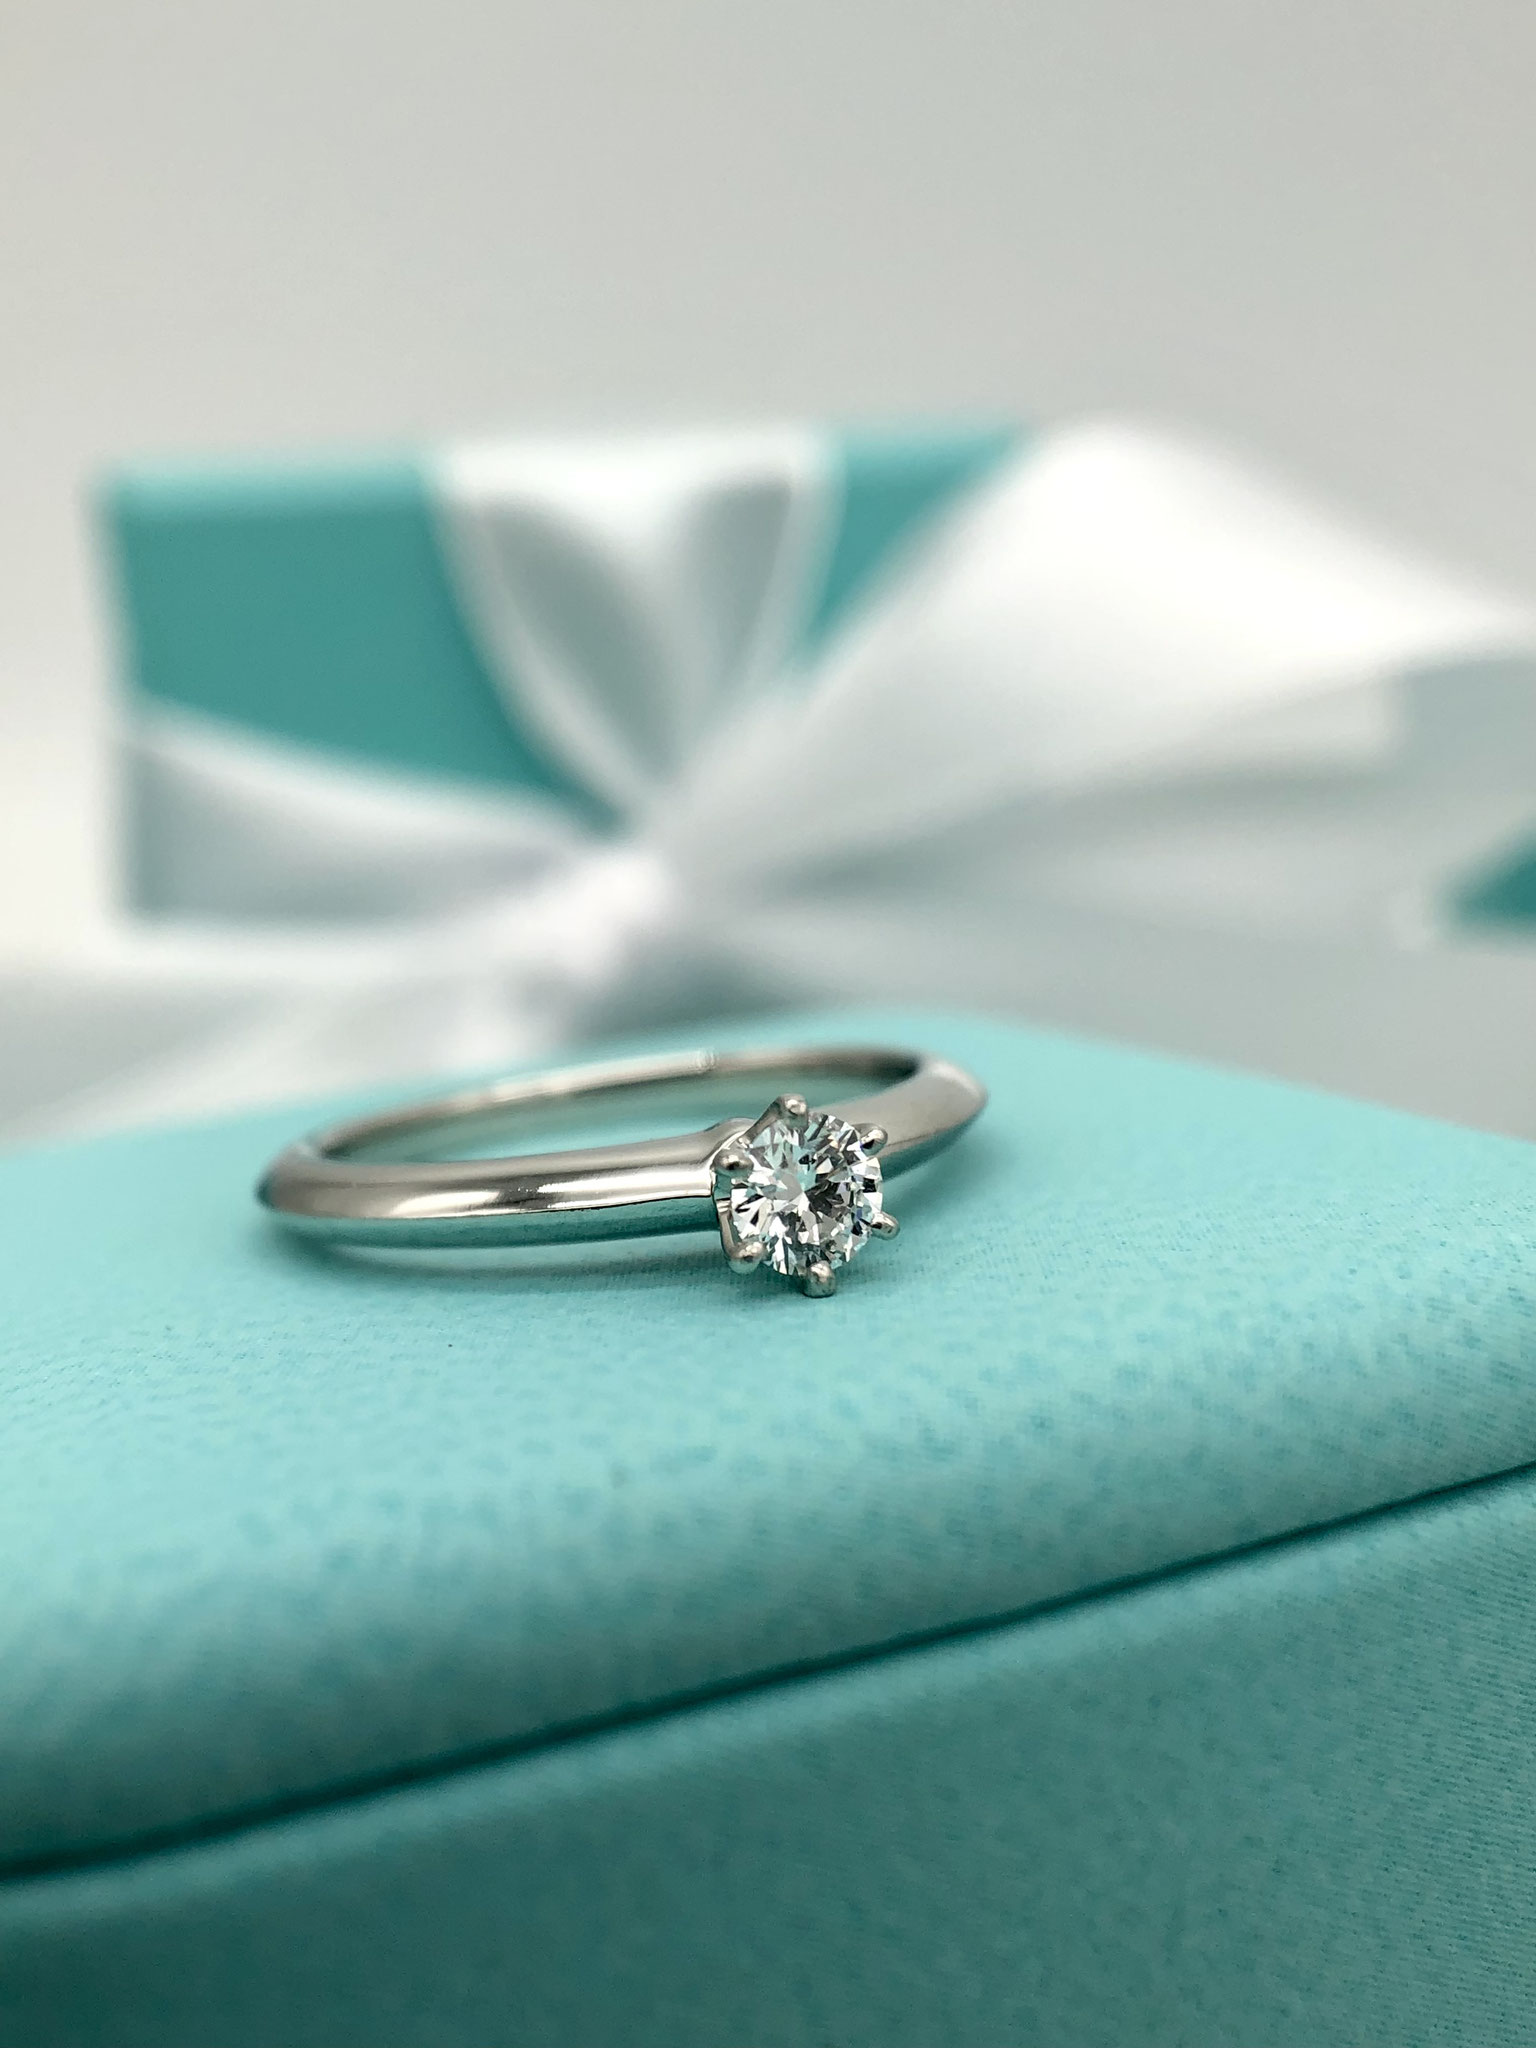 Tiffany&Co. Setting / Jubel Ring